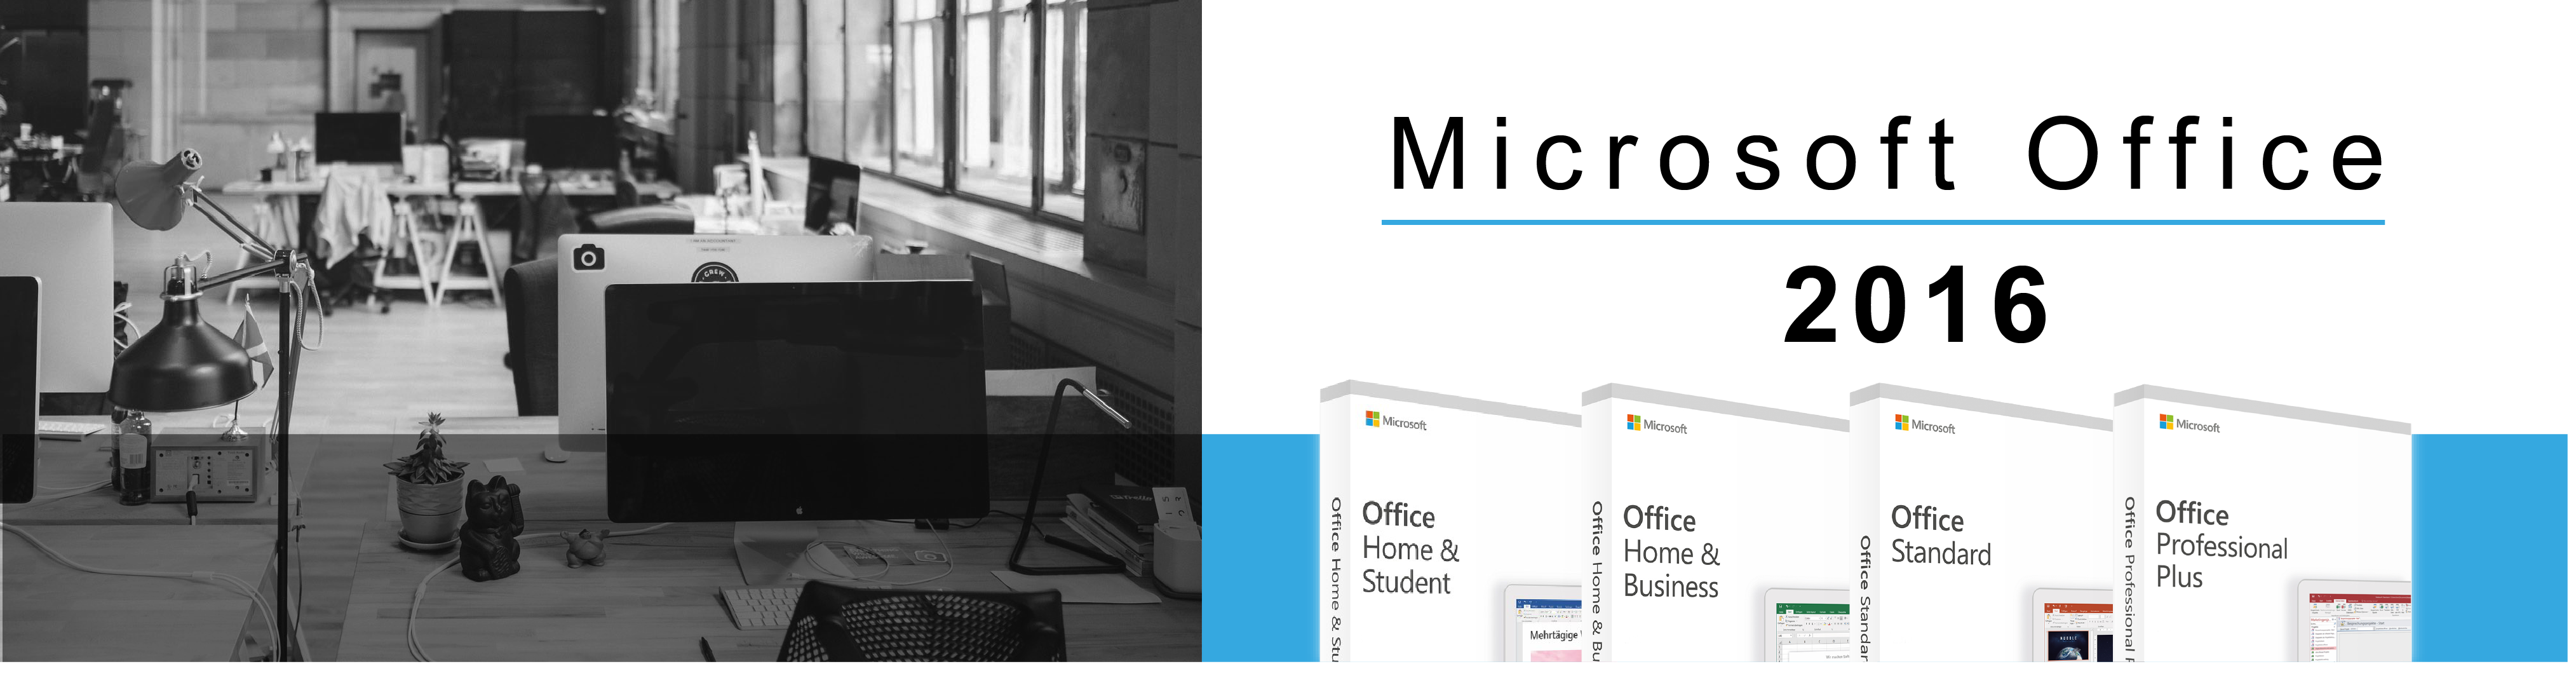 Microsoft Office 2016 (Windows)